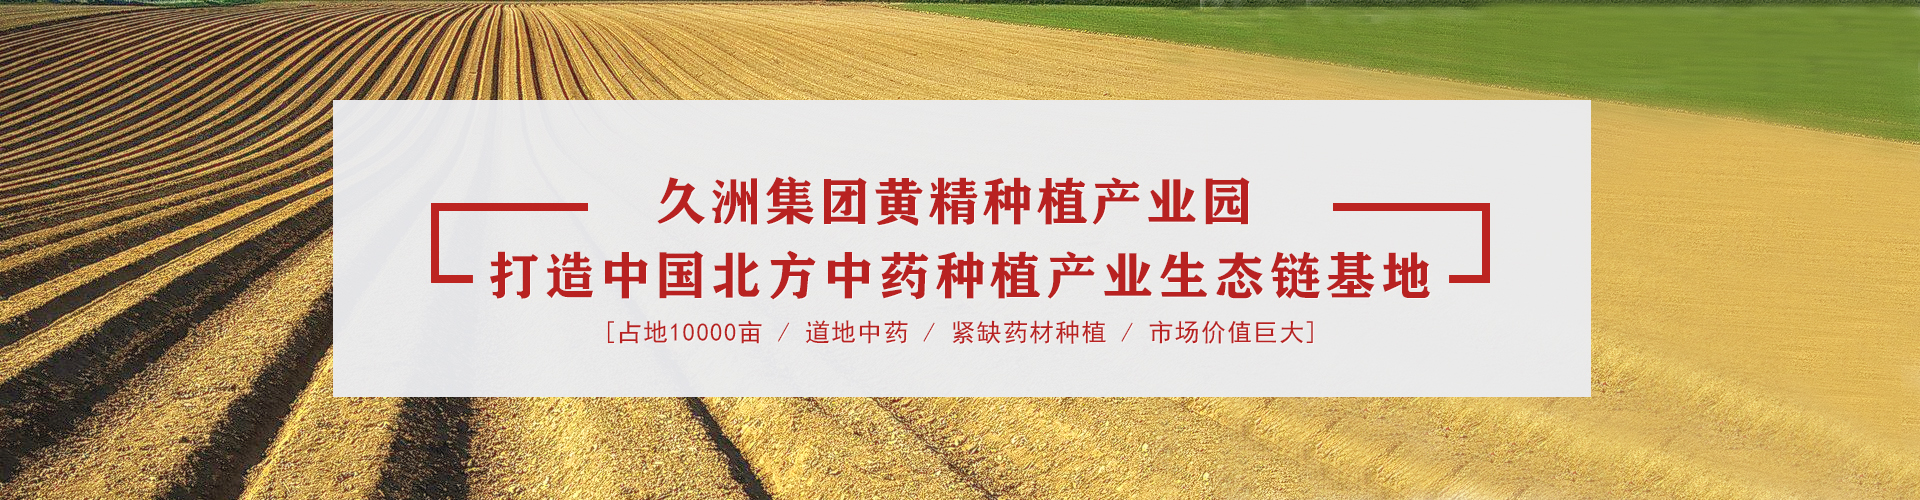 黄精产业园横幅网站海报